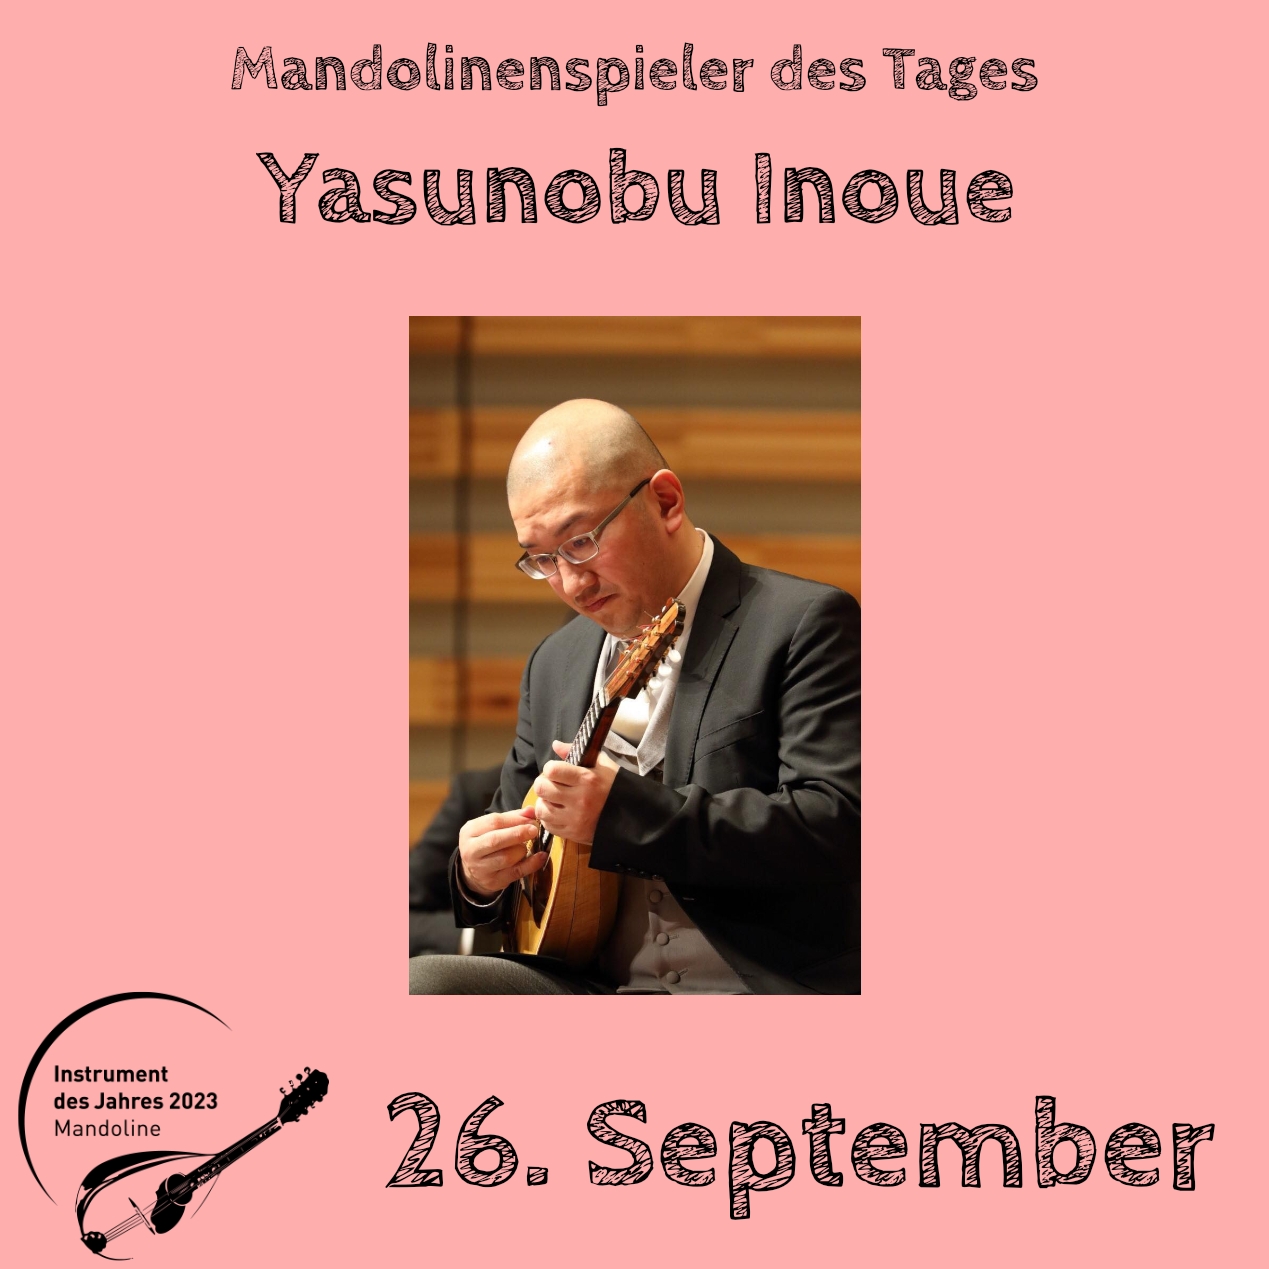 26. September - Yasunobu Inoue Mandoline Instrument des Jahres 2023 Mandolinenspieler Mandolinenspielerin des Tages